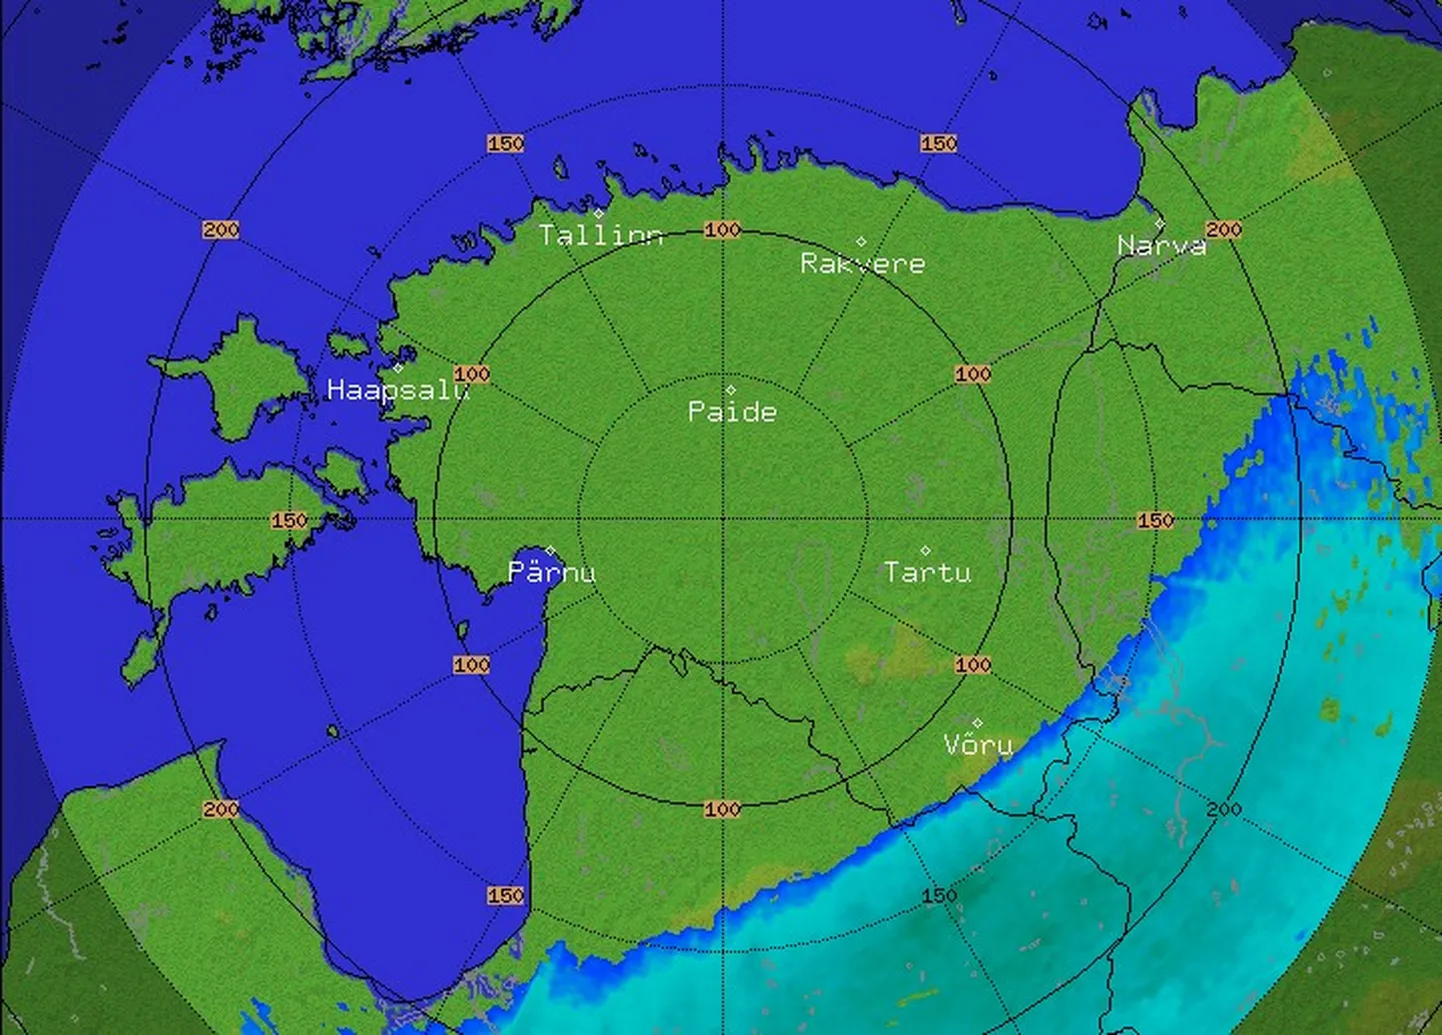 Keskkonnaagentuuri lennumeteoroloogilise informatsiooni järgi paistis kell 20.05 Sürgavere radarile kole ilm lähenevat Võrule. Paarkümmend minutit varem ulatus selle serv Eesti kagupiirile.